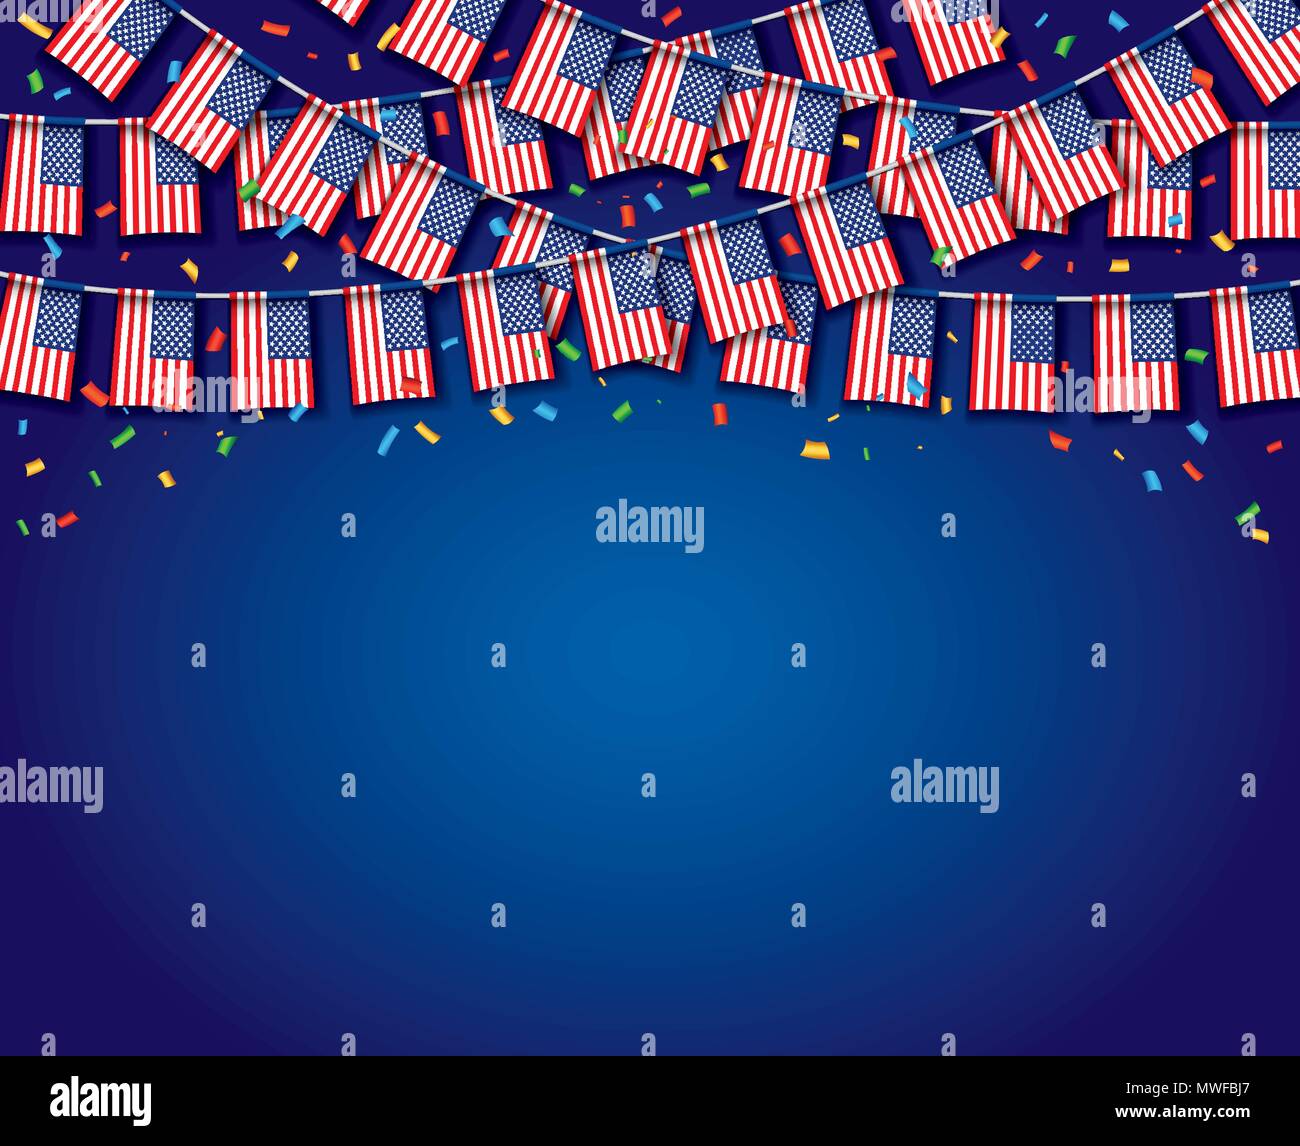 Girlande USA Flags, die mit einem blauen Hintergrund, Vorlage Banner, hängende Bunting Flags für den 4. Juli Nationalfeiertag feiern, Vector Illustration Stock Vektor